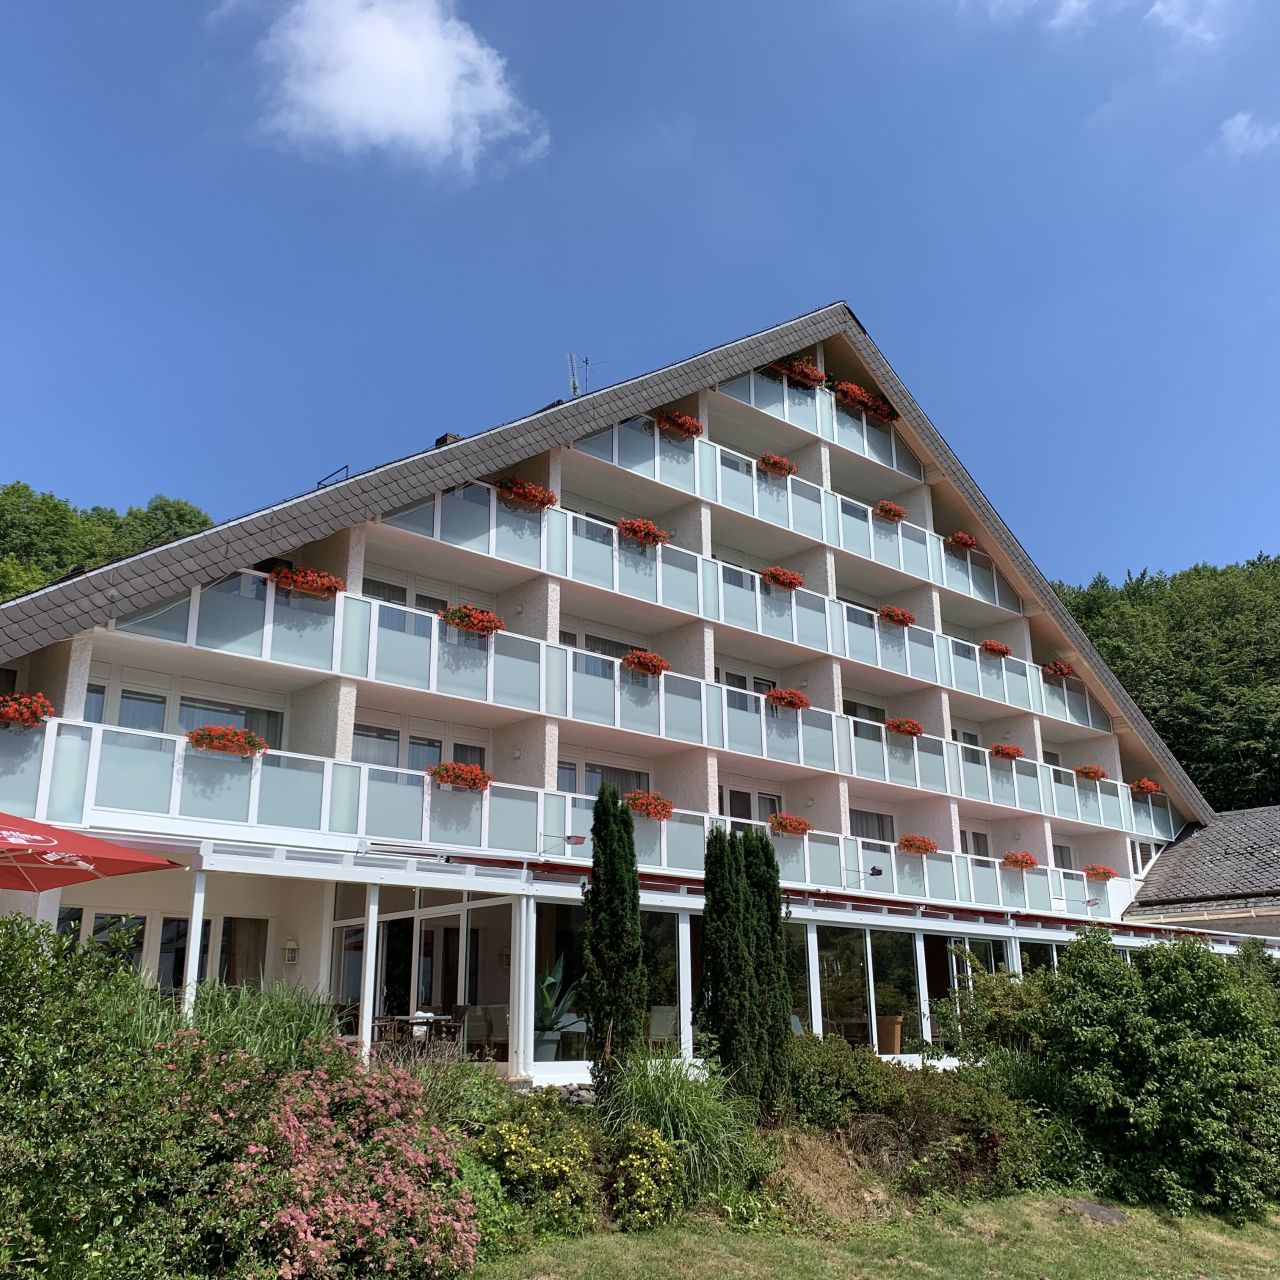 Best Western Hotel Rhön Garden in Poppenhausen - HOTEL DE